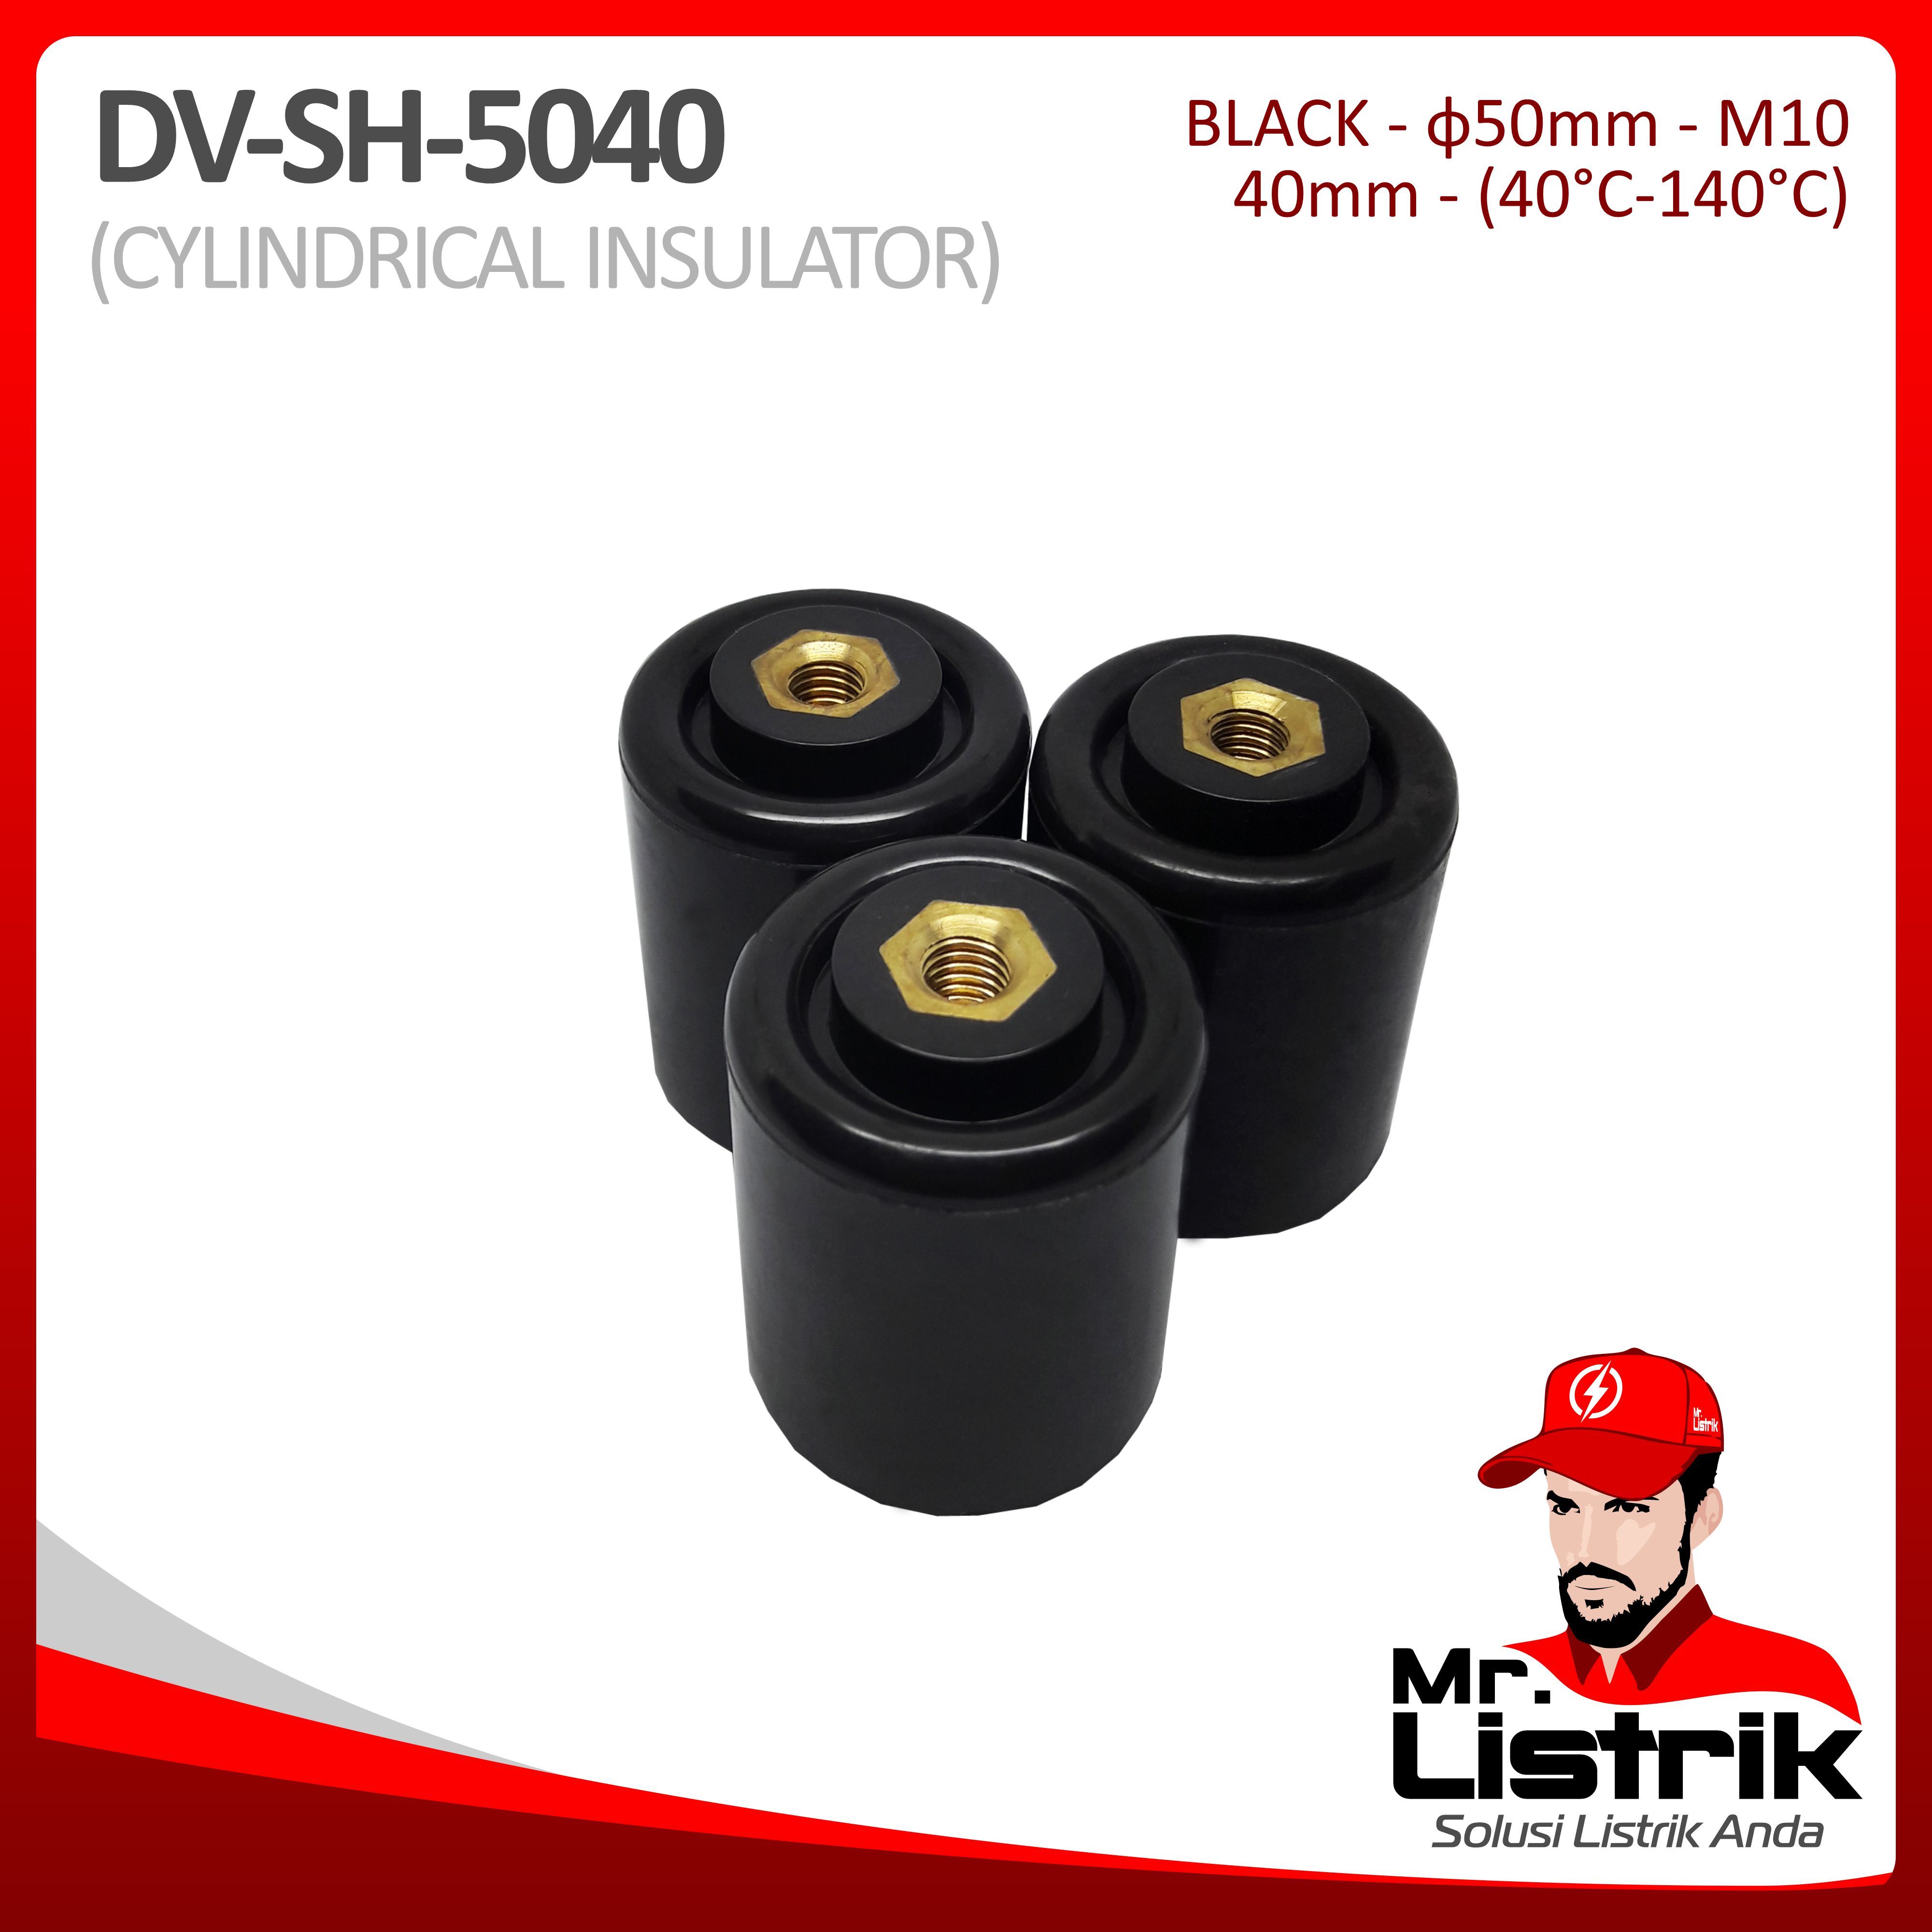 Cylindrical Insulator Rekolit DV SH-5040